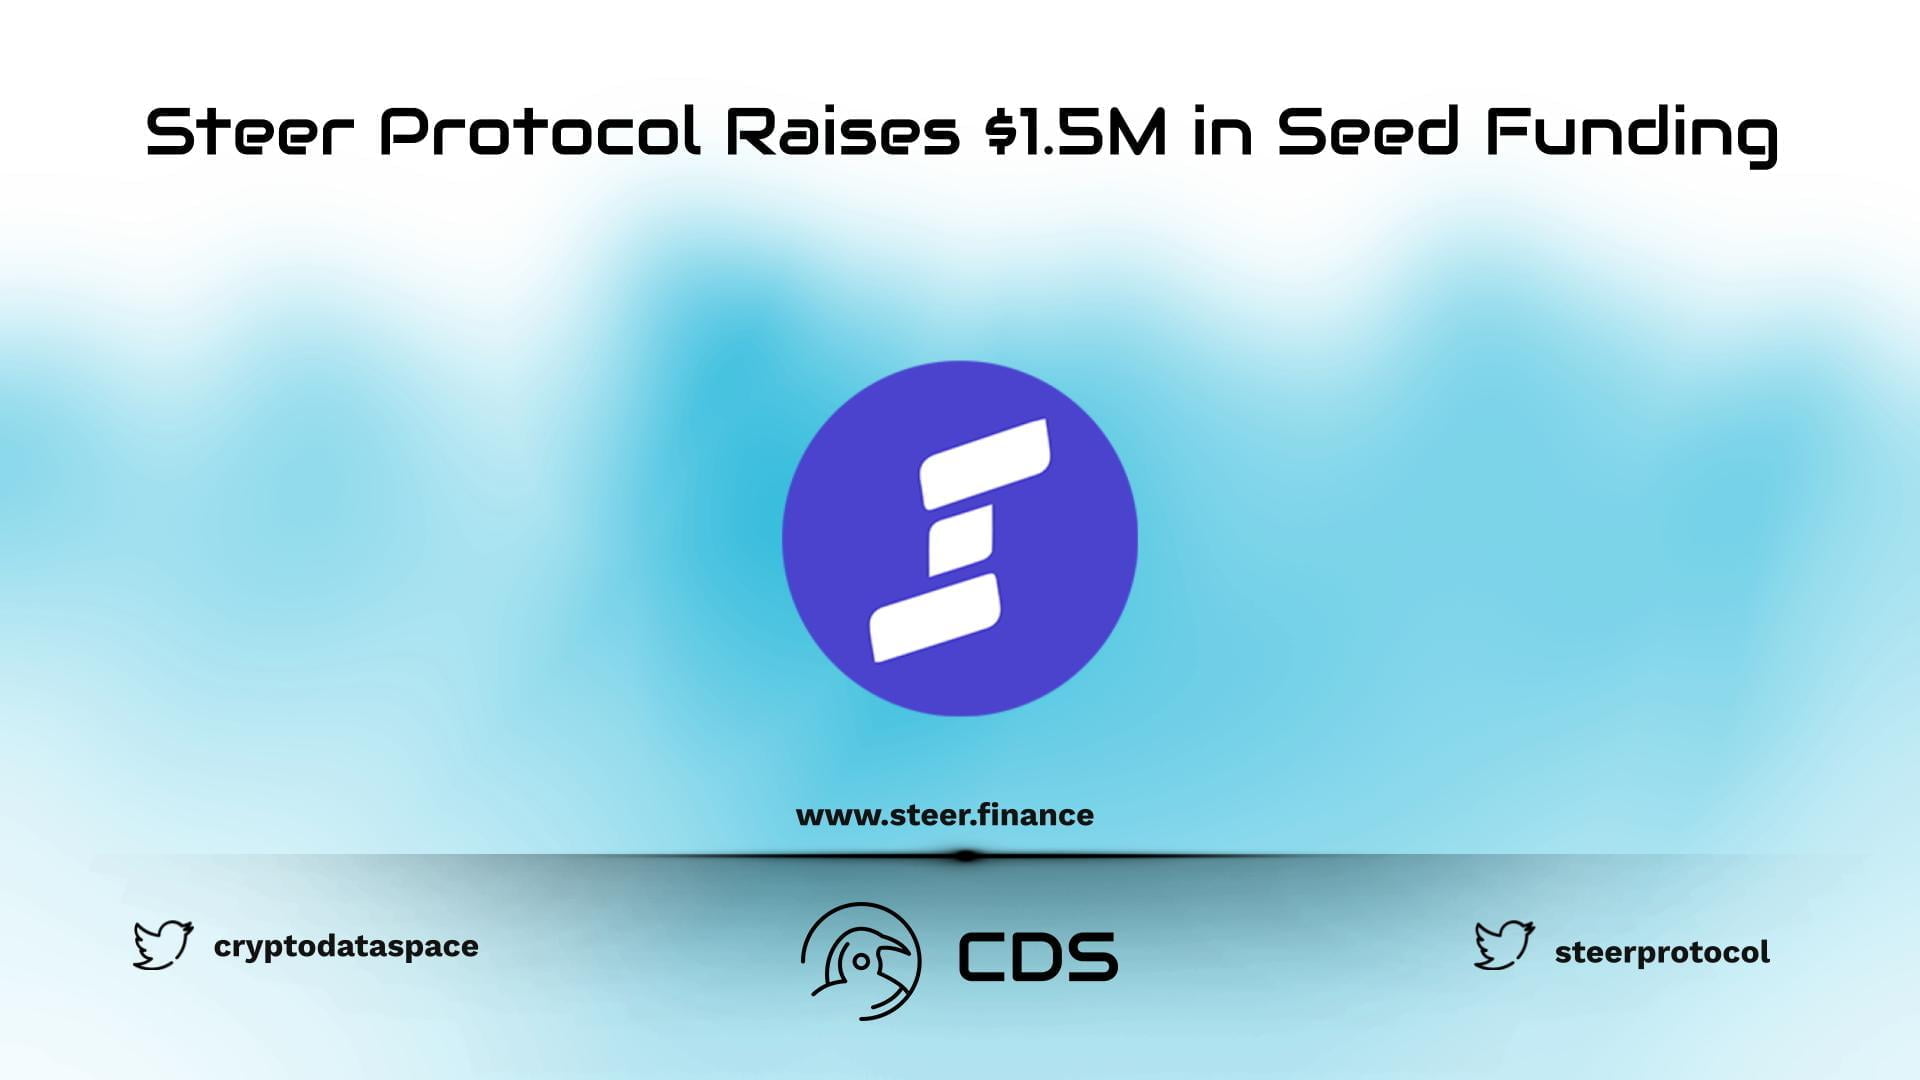 Steer Protocol Raises $1.5M in Seed Funding